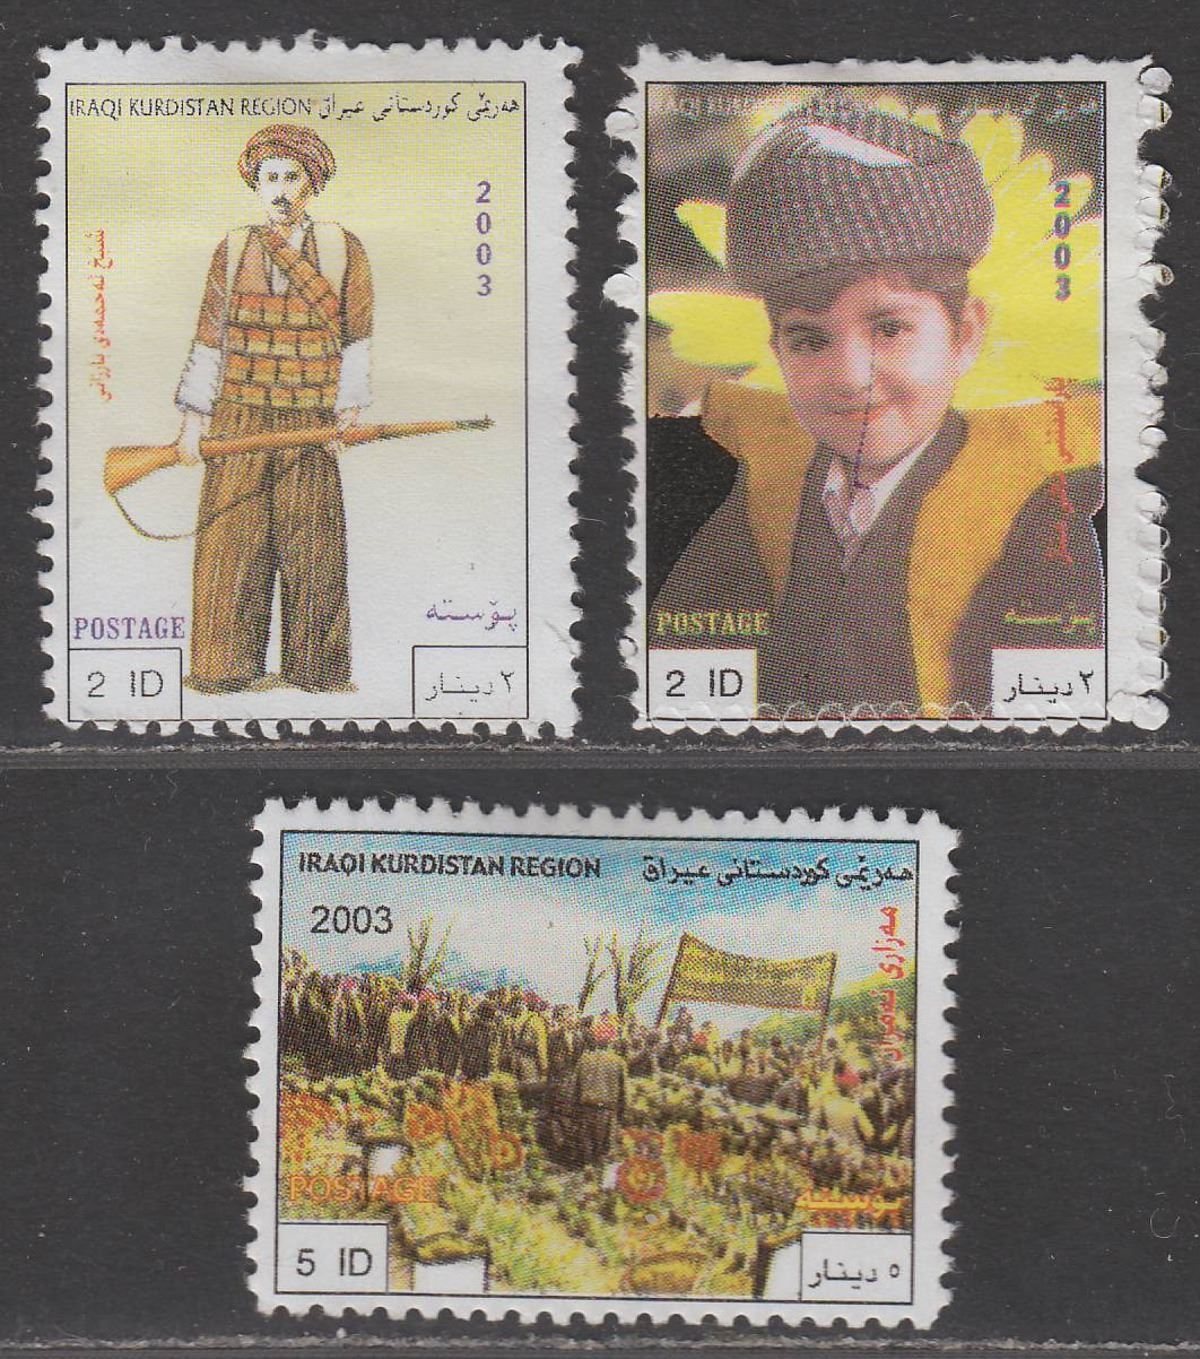 Iraq Kurdistan Region 2003 Sultan 2d, Boy 2d and 5d Mint